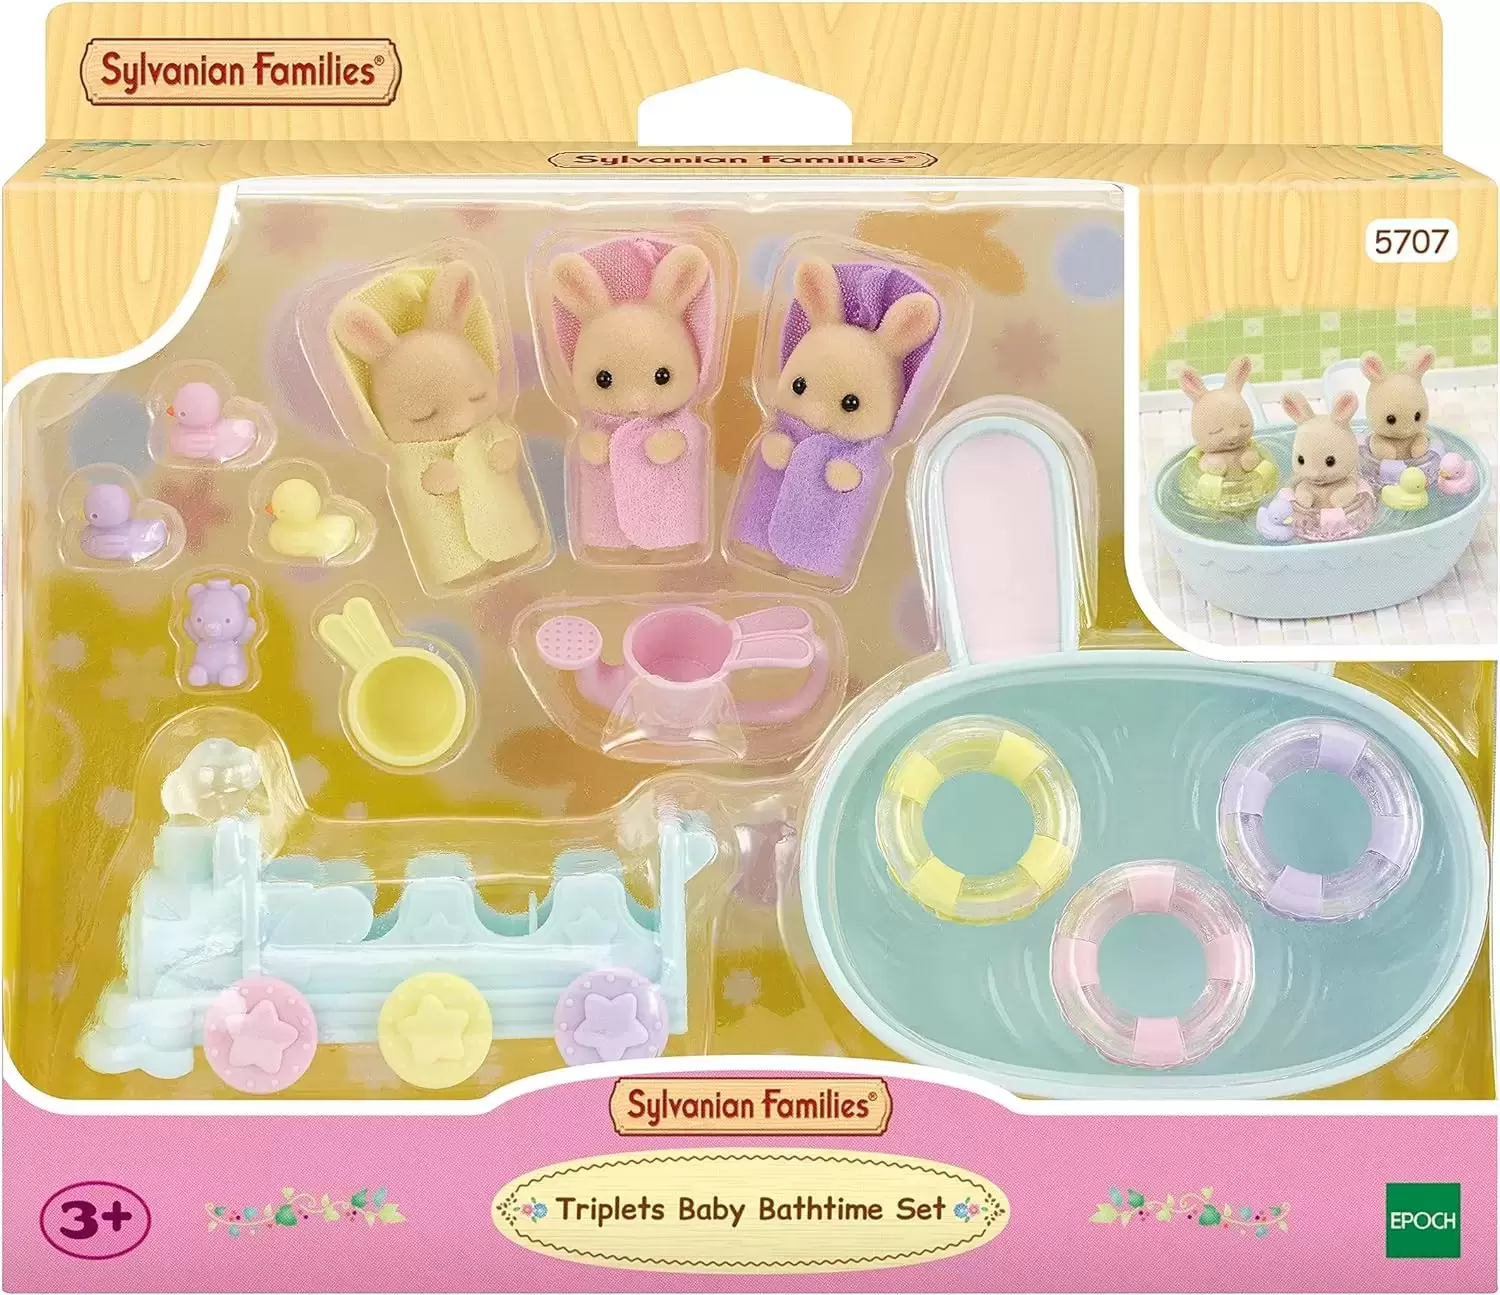 Baby's panda , lapin toy box Sylvanian families - Sylvanian Families